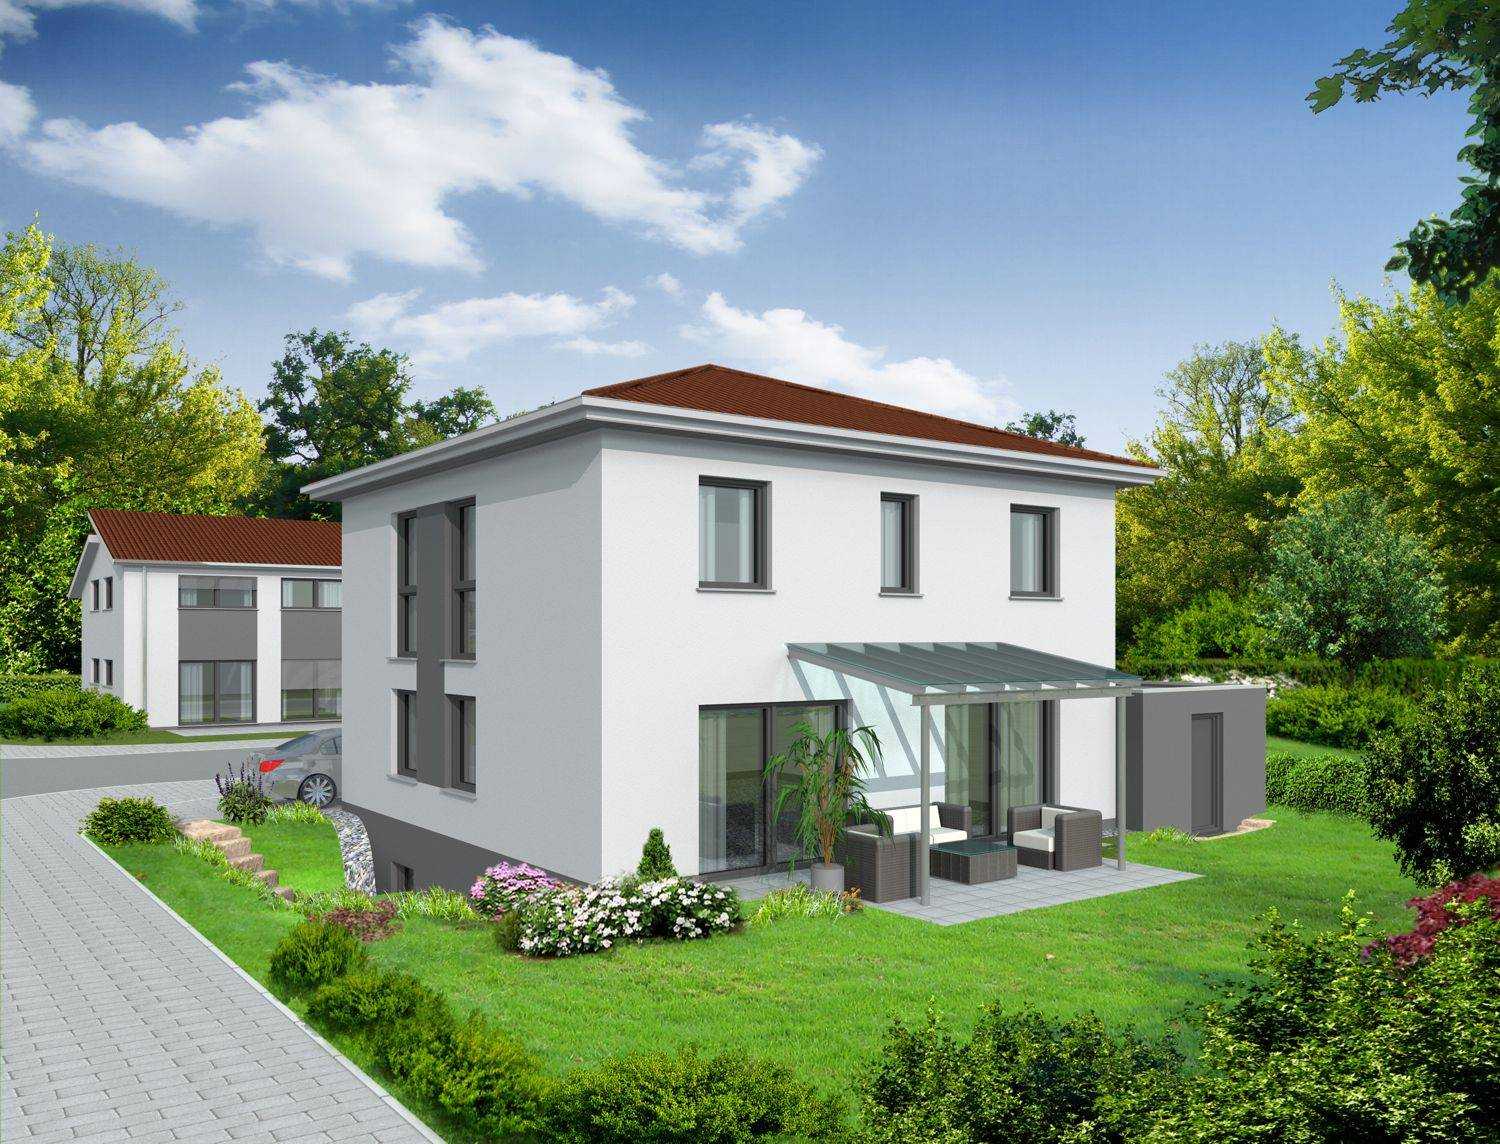 3D-Architekturvisualisierung eines Einfamilienhauses mit überdachter Terrasse und Garage für AKIDE Wohnbau  GmbH aus Neckarsulm (Jahr 2014)